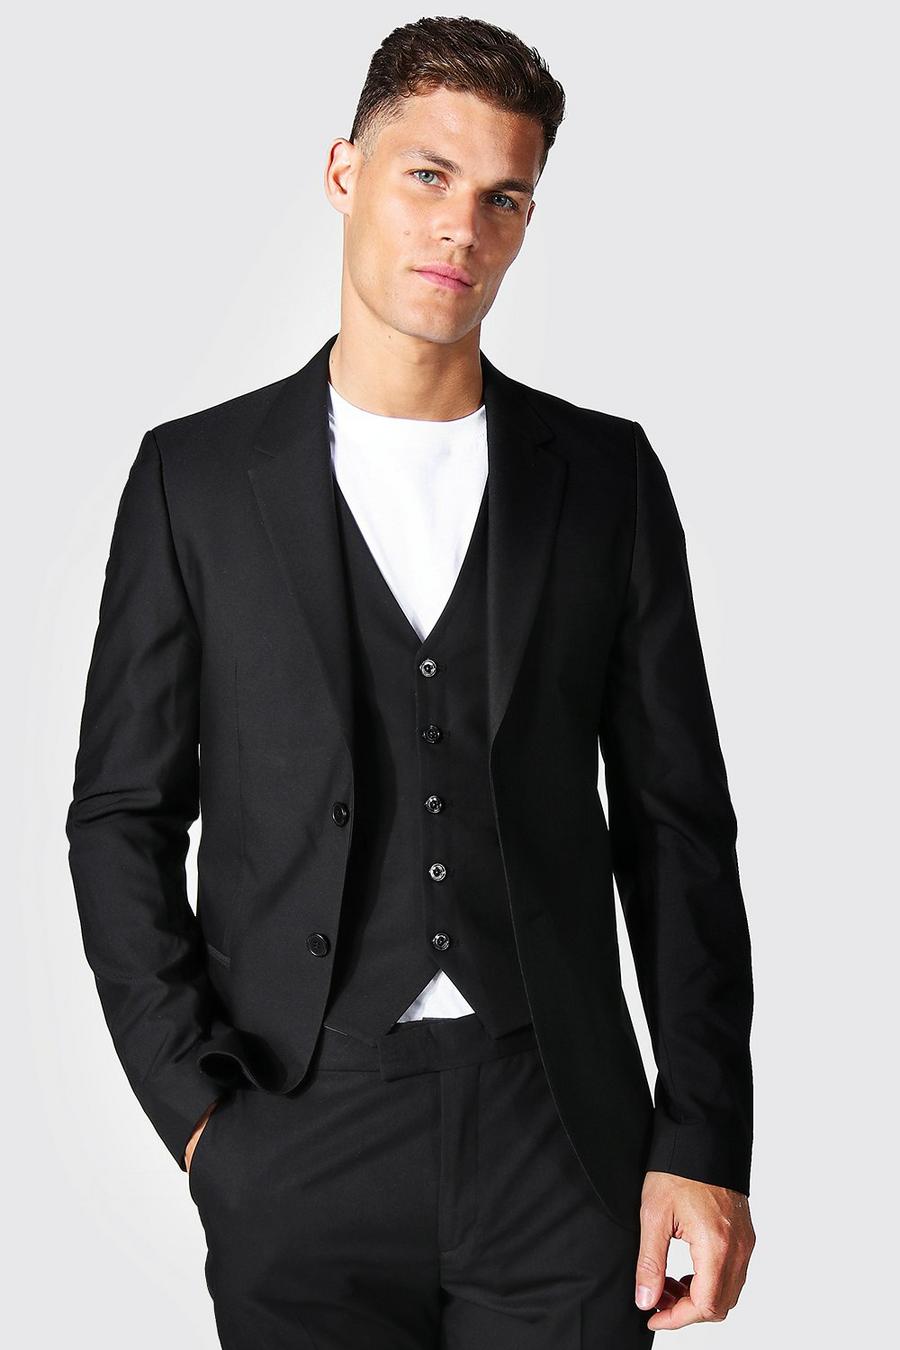 שחור nero ז'קט חליפה סקיני עם רכיסה אחת לגברים גבוהים